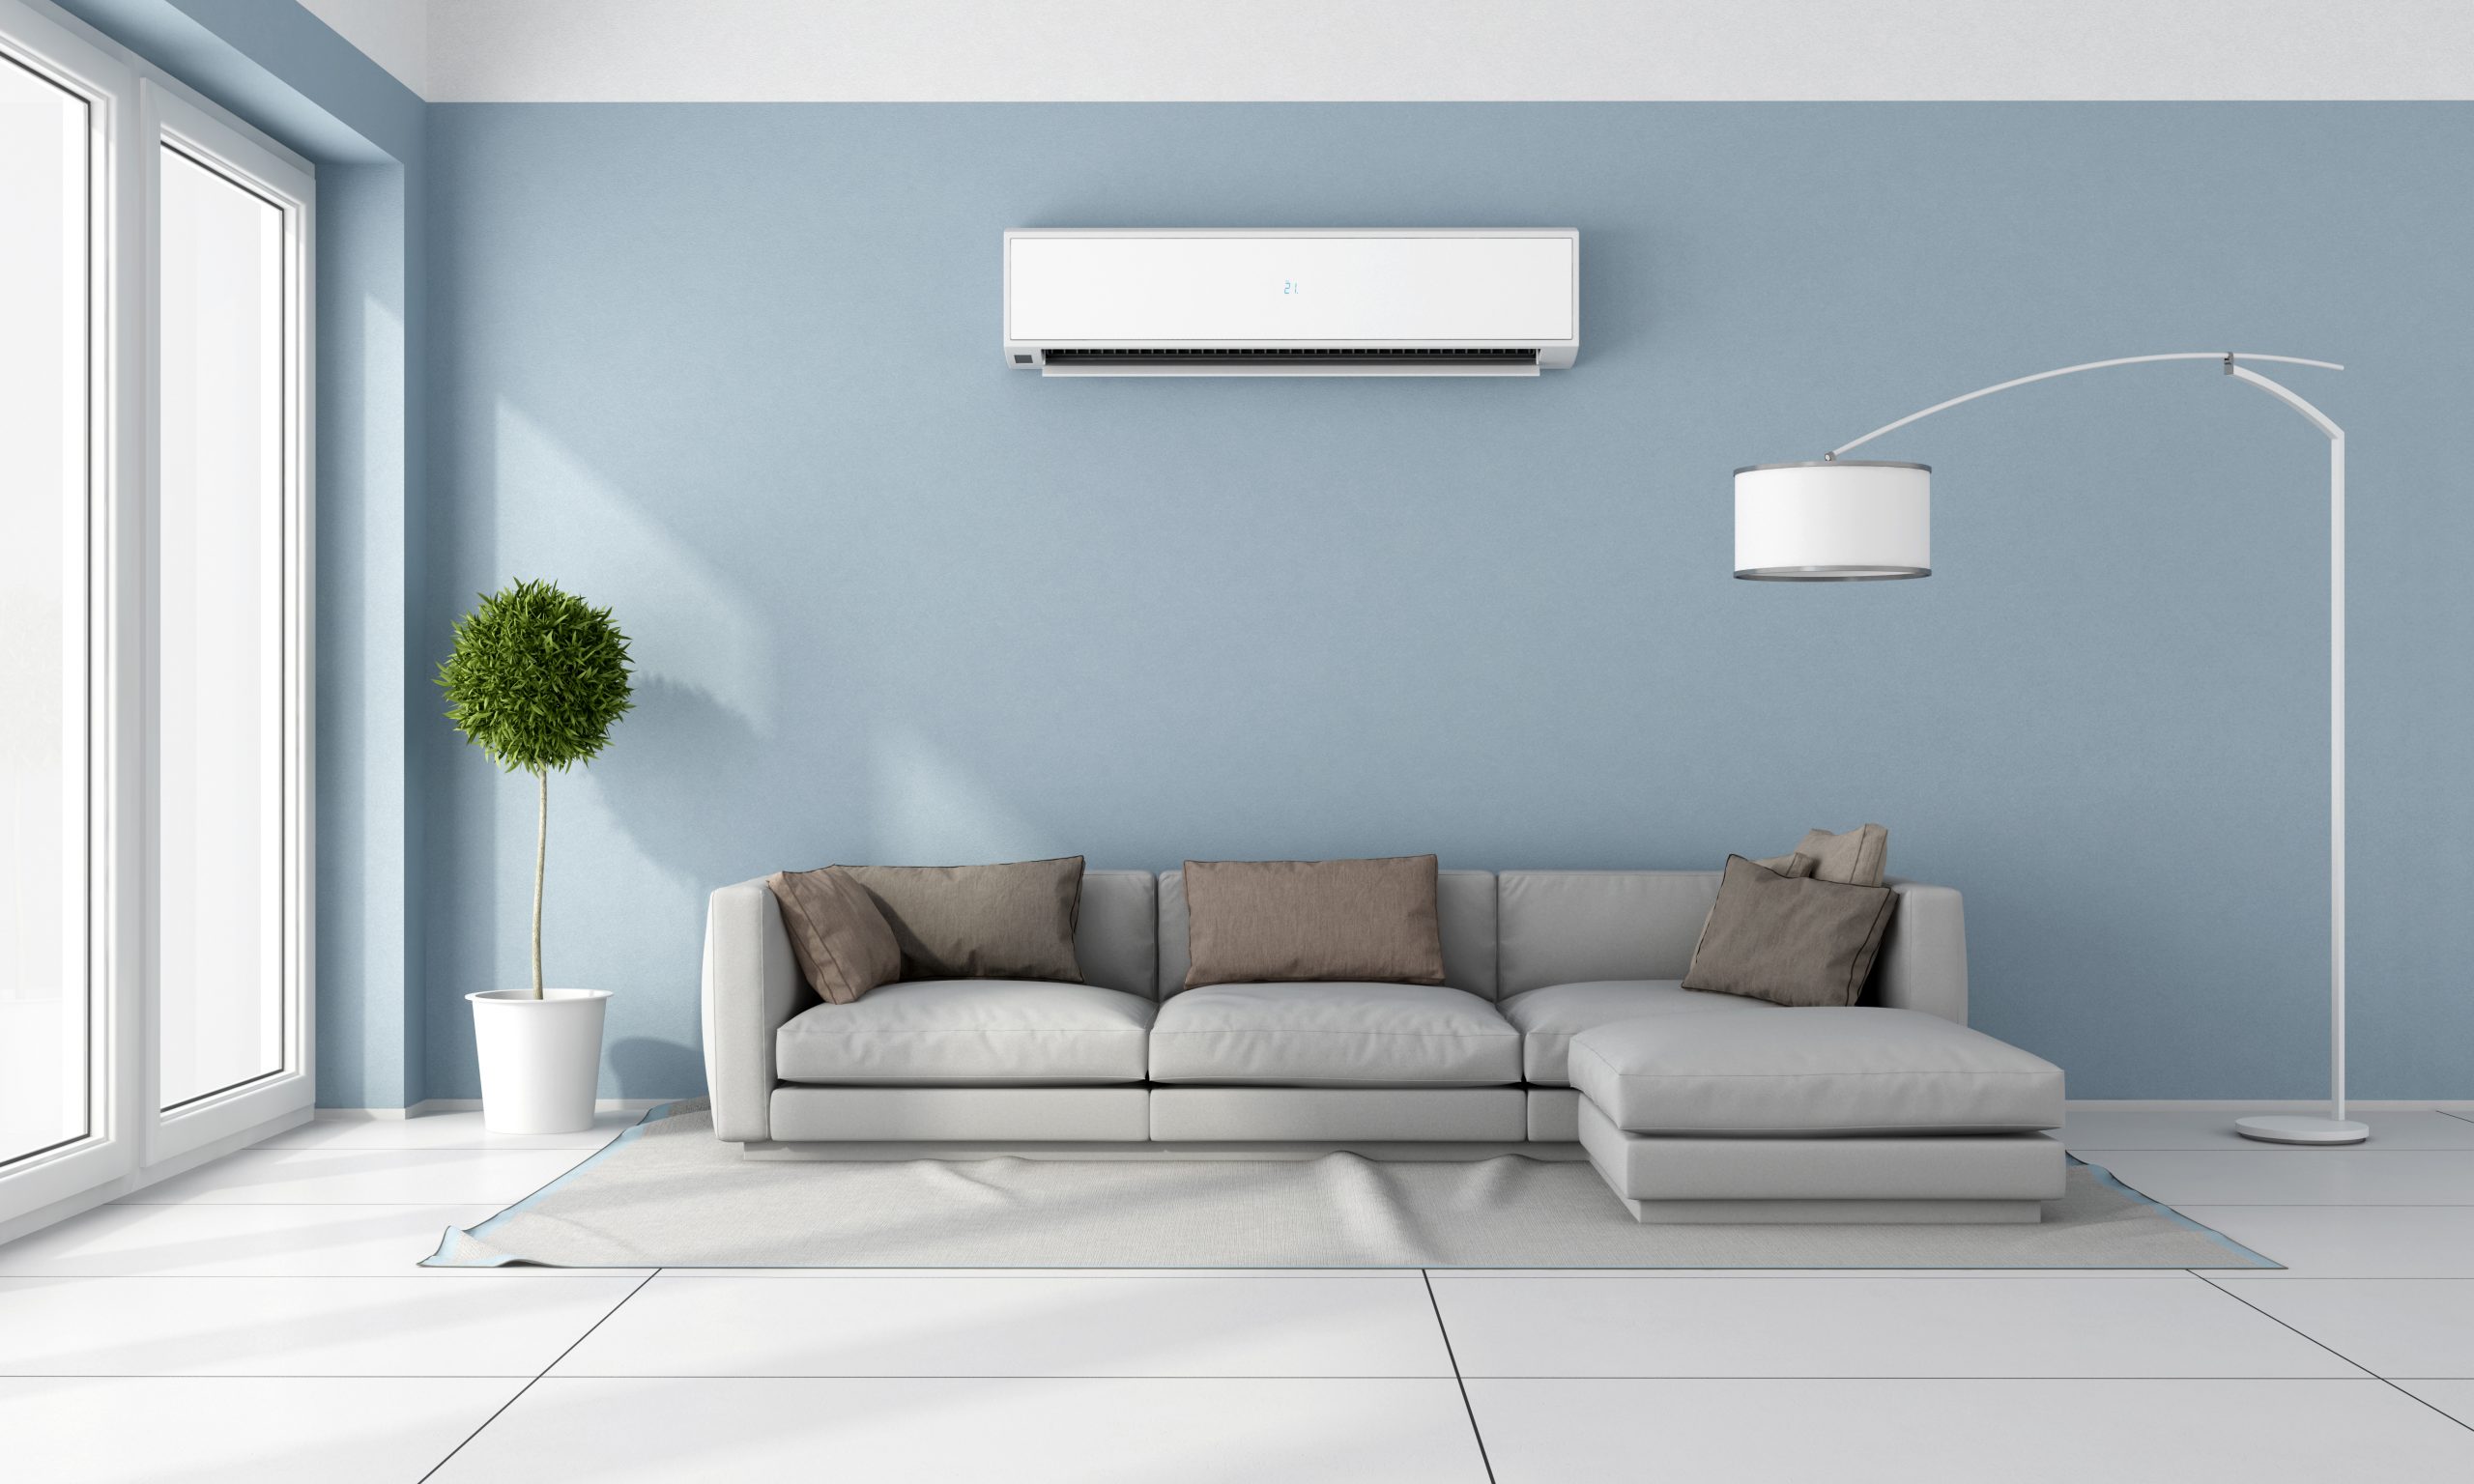 Die Klimaanalage - Wohnzimmer mit einer Klimaanlage